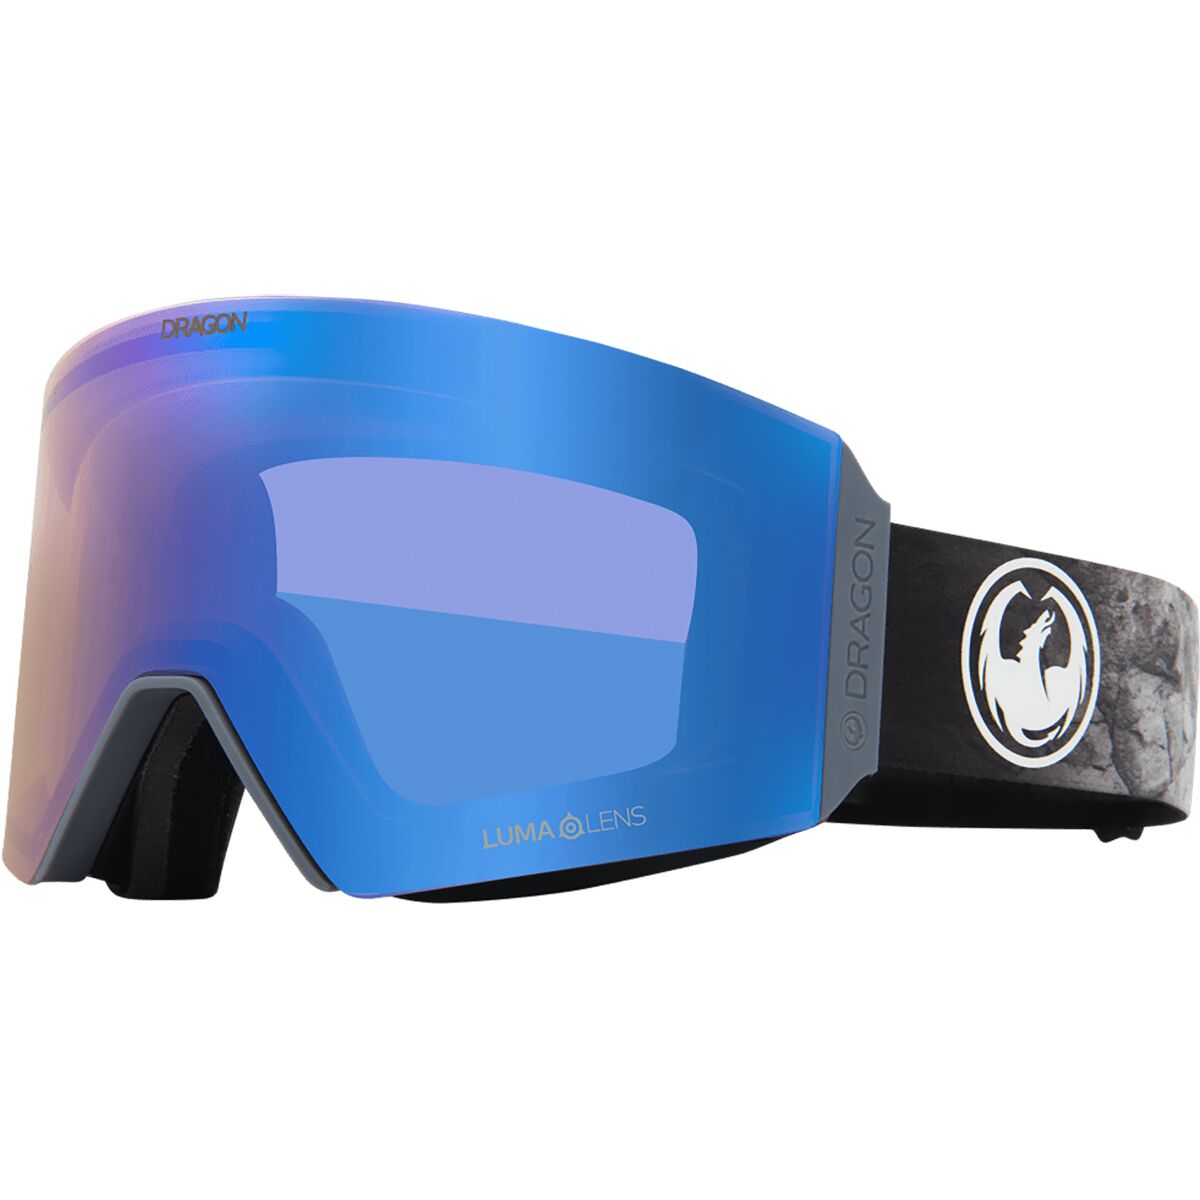 Dragon RVX OTG Goggles - Ski